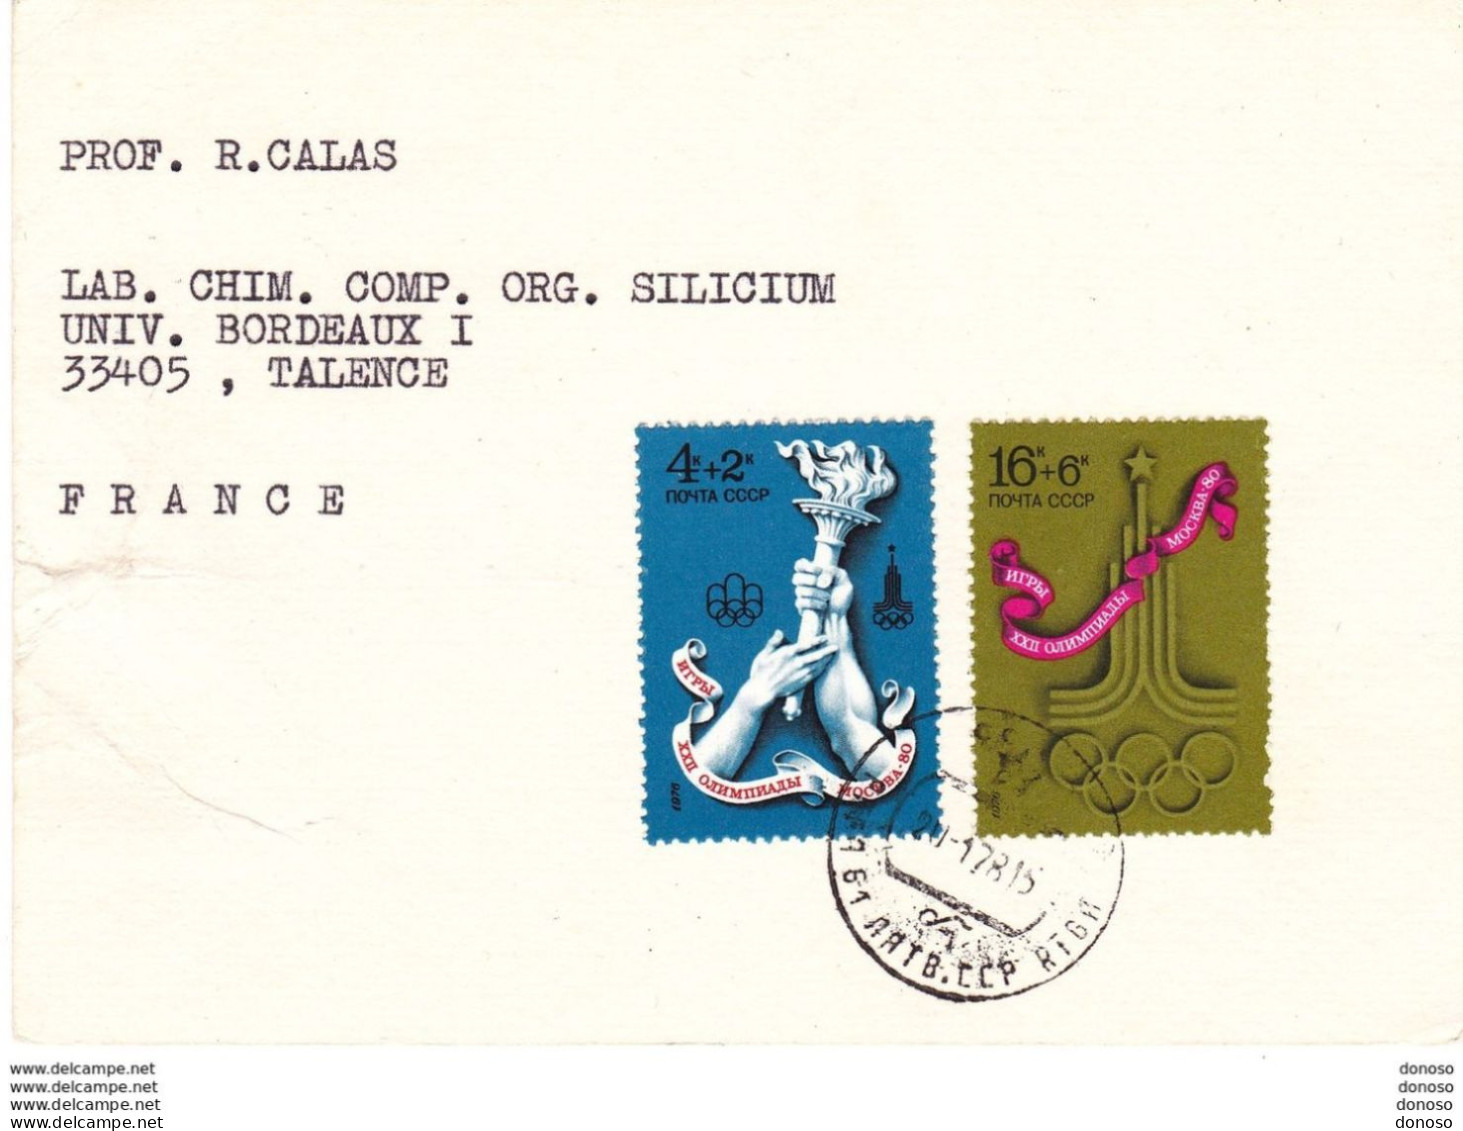 URSS 1978 Carte Pour Faculté Des Sciences De Bordeaux, Timbres Jeux Olympiques - Briefe U. Dokumente